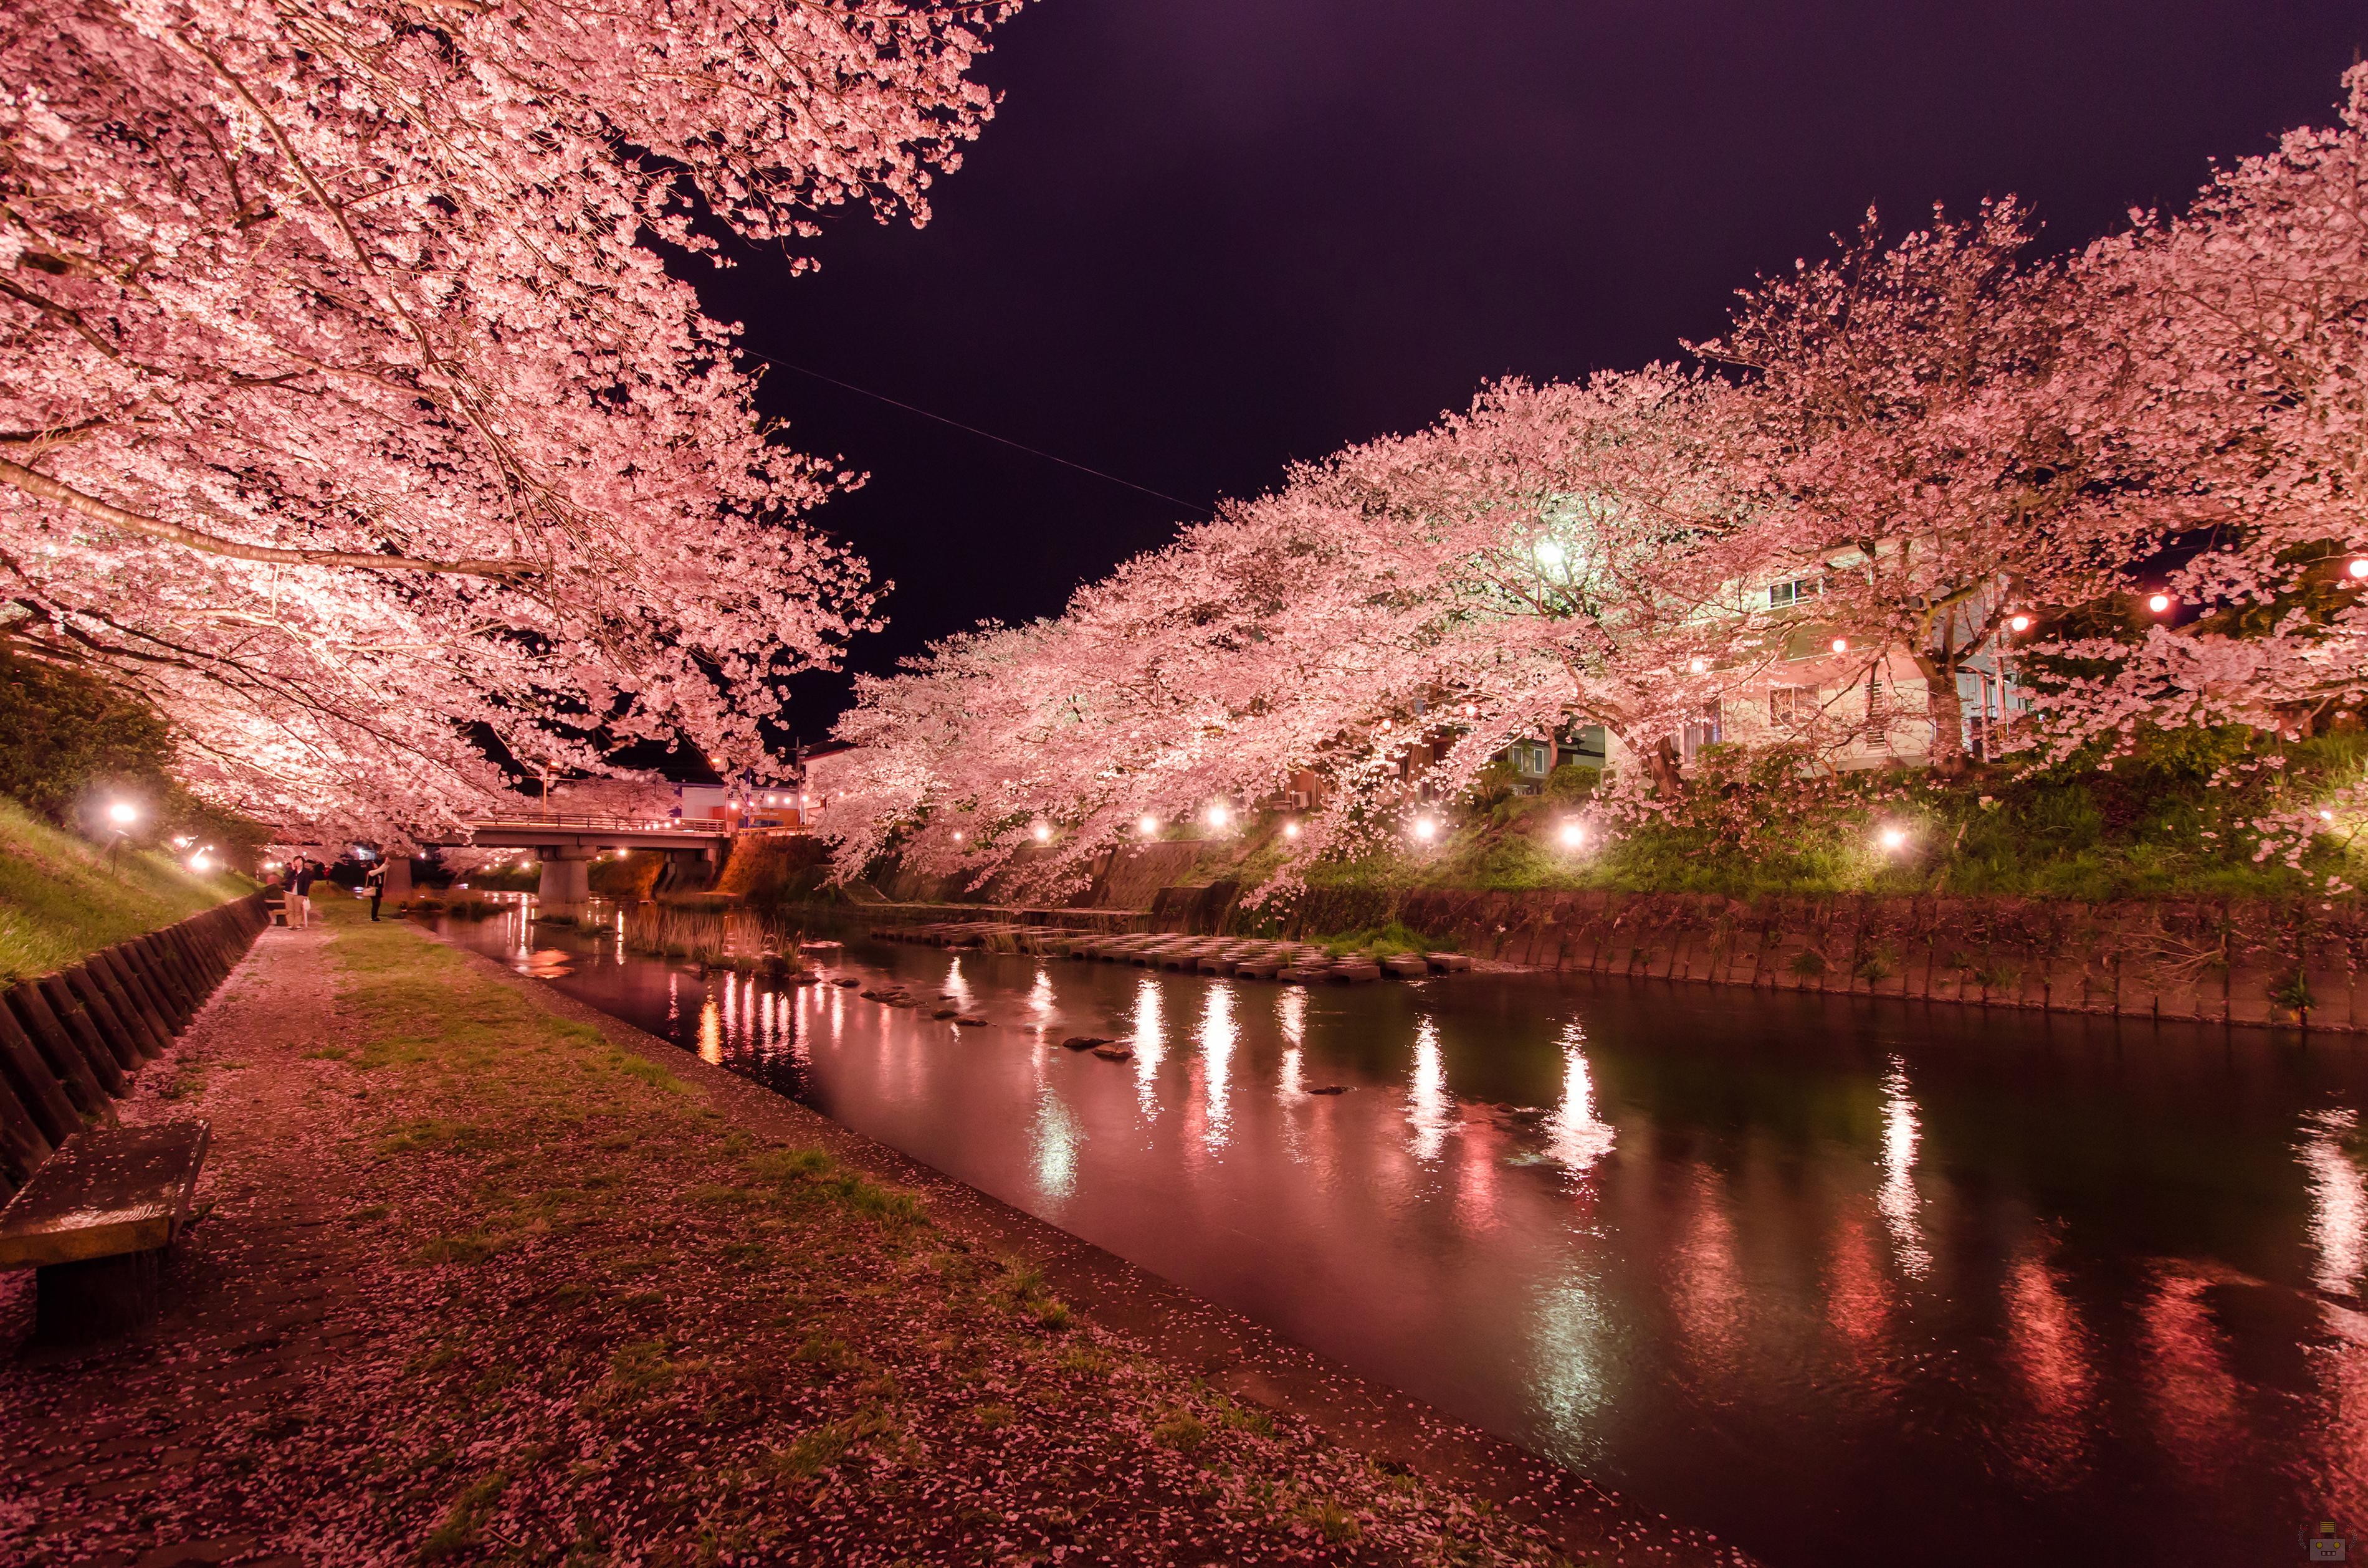 美祢さくら公園で夜桜撮ってきたよ 山口県の出張カメラマン長谷川涼太